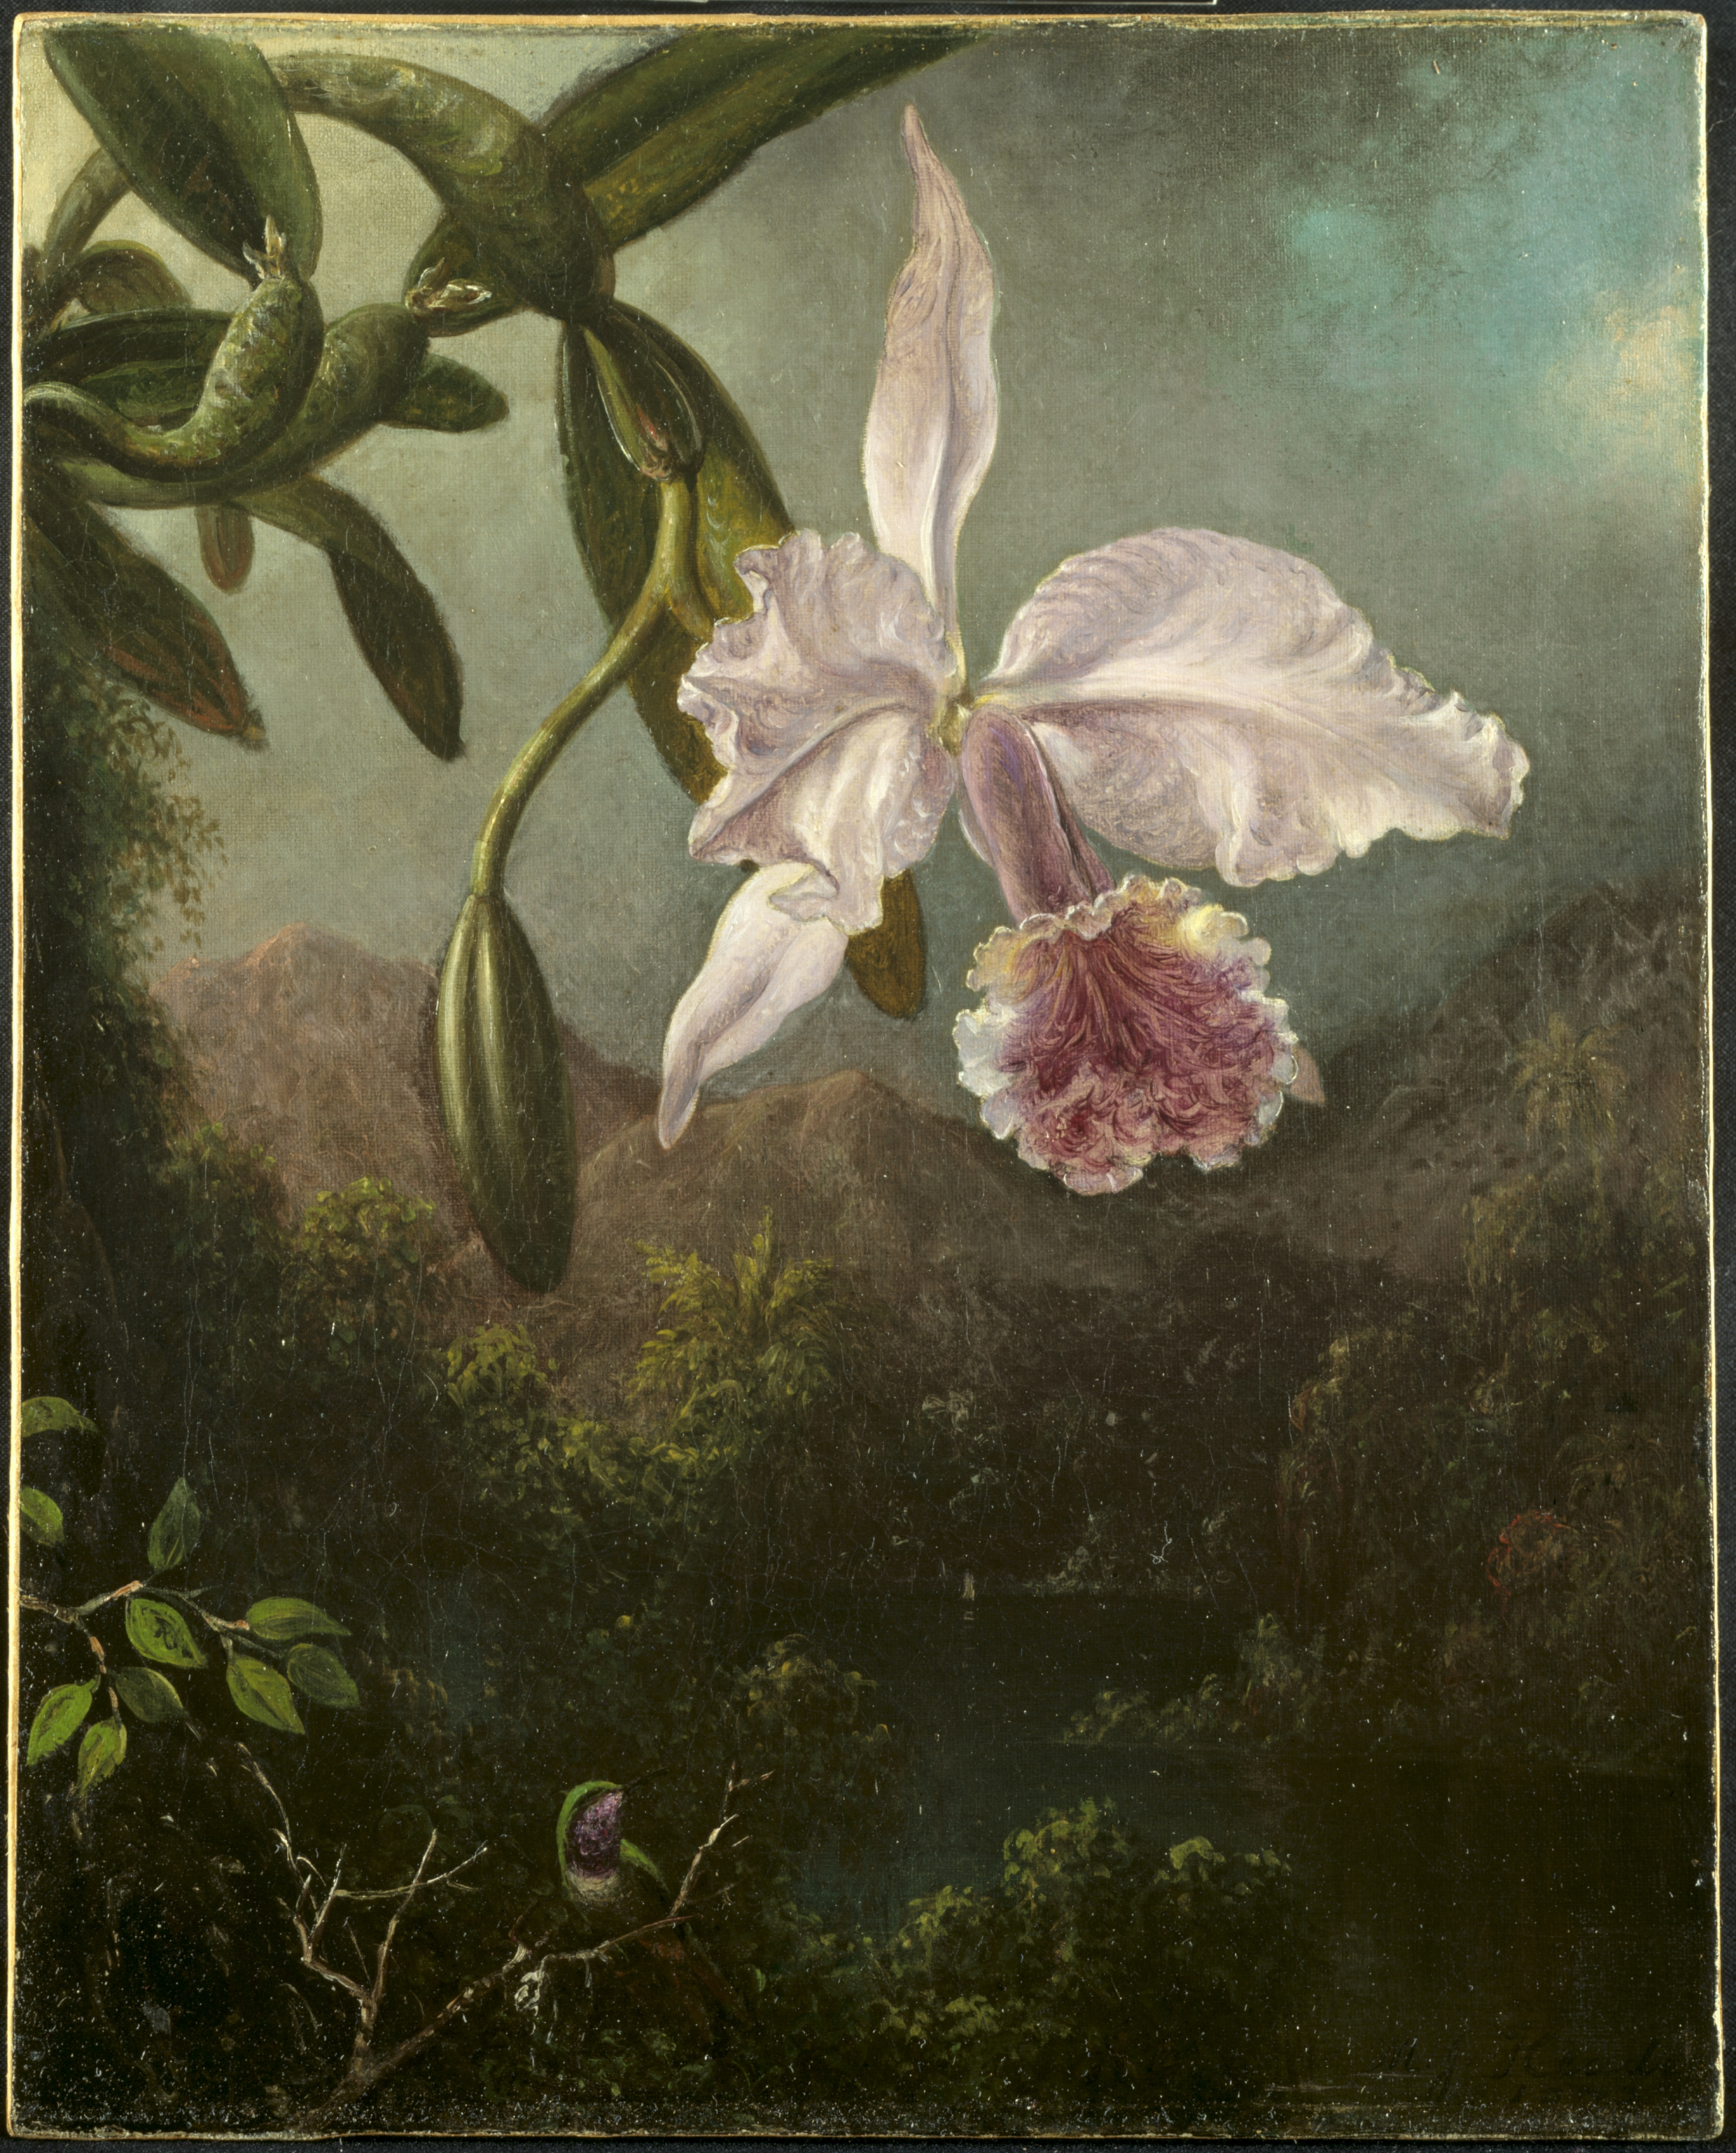 Fleurs d'orchidée by Martin Johnson Heade - 1873 - 47,6 x 40 cm Cleveland Museum of Art